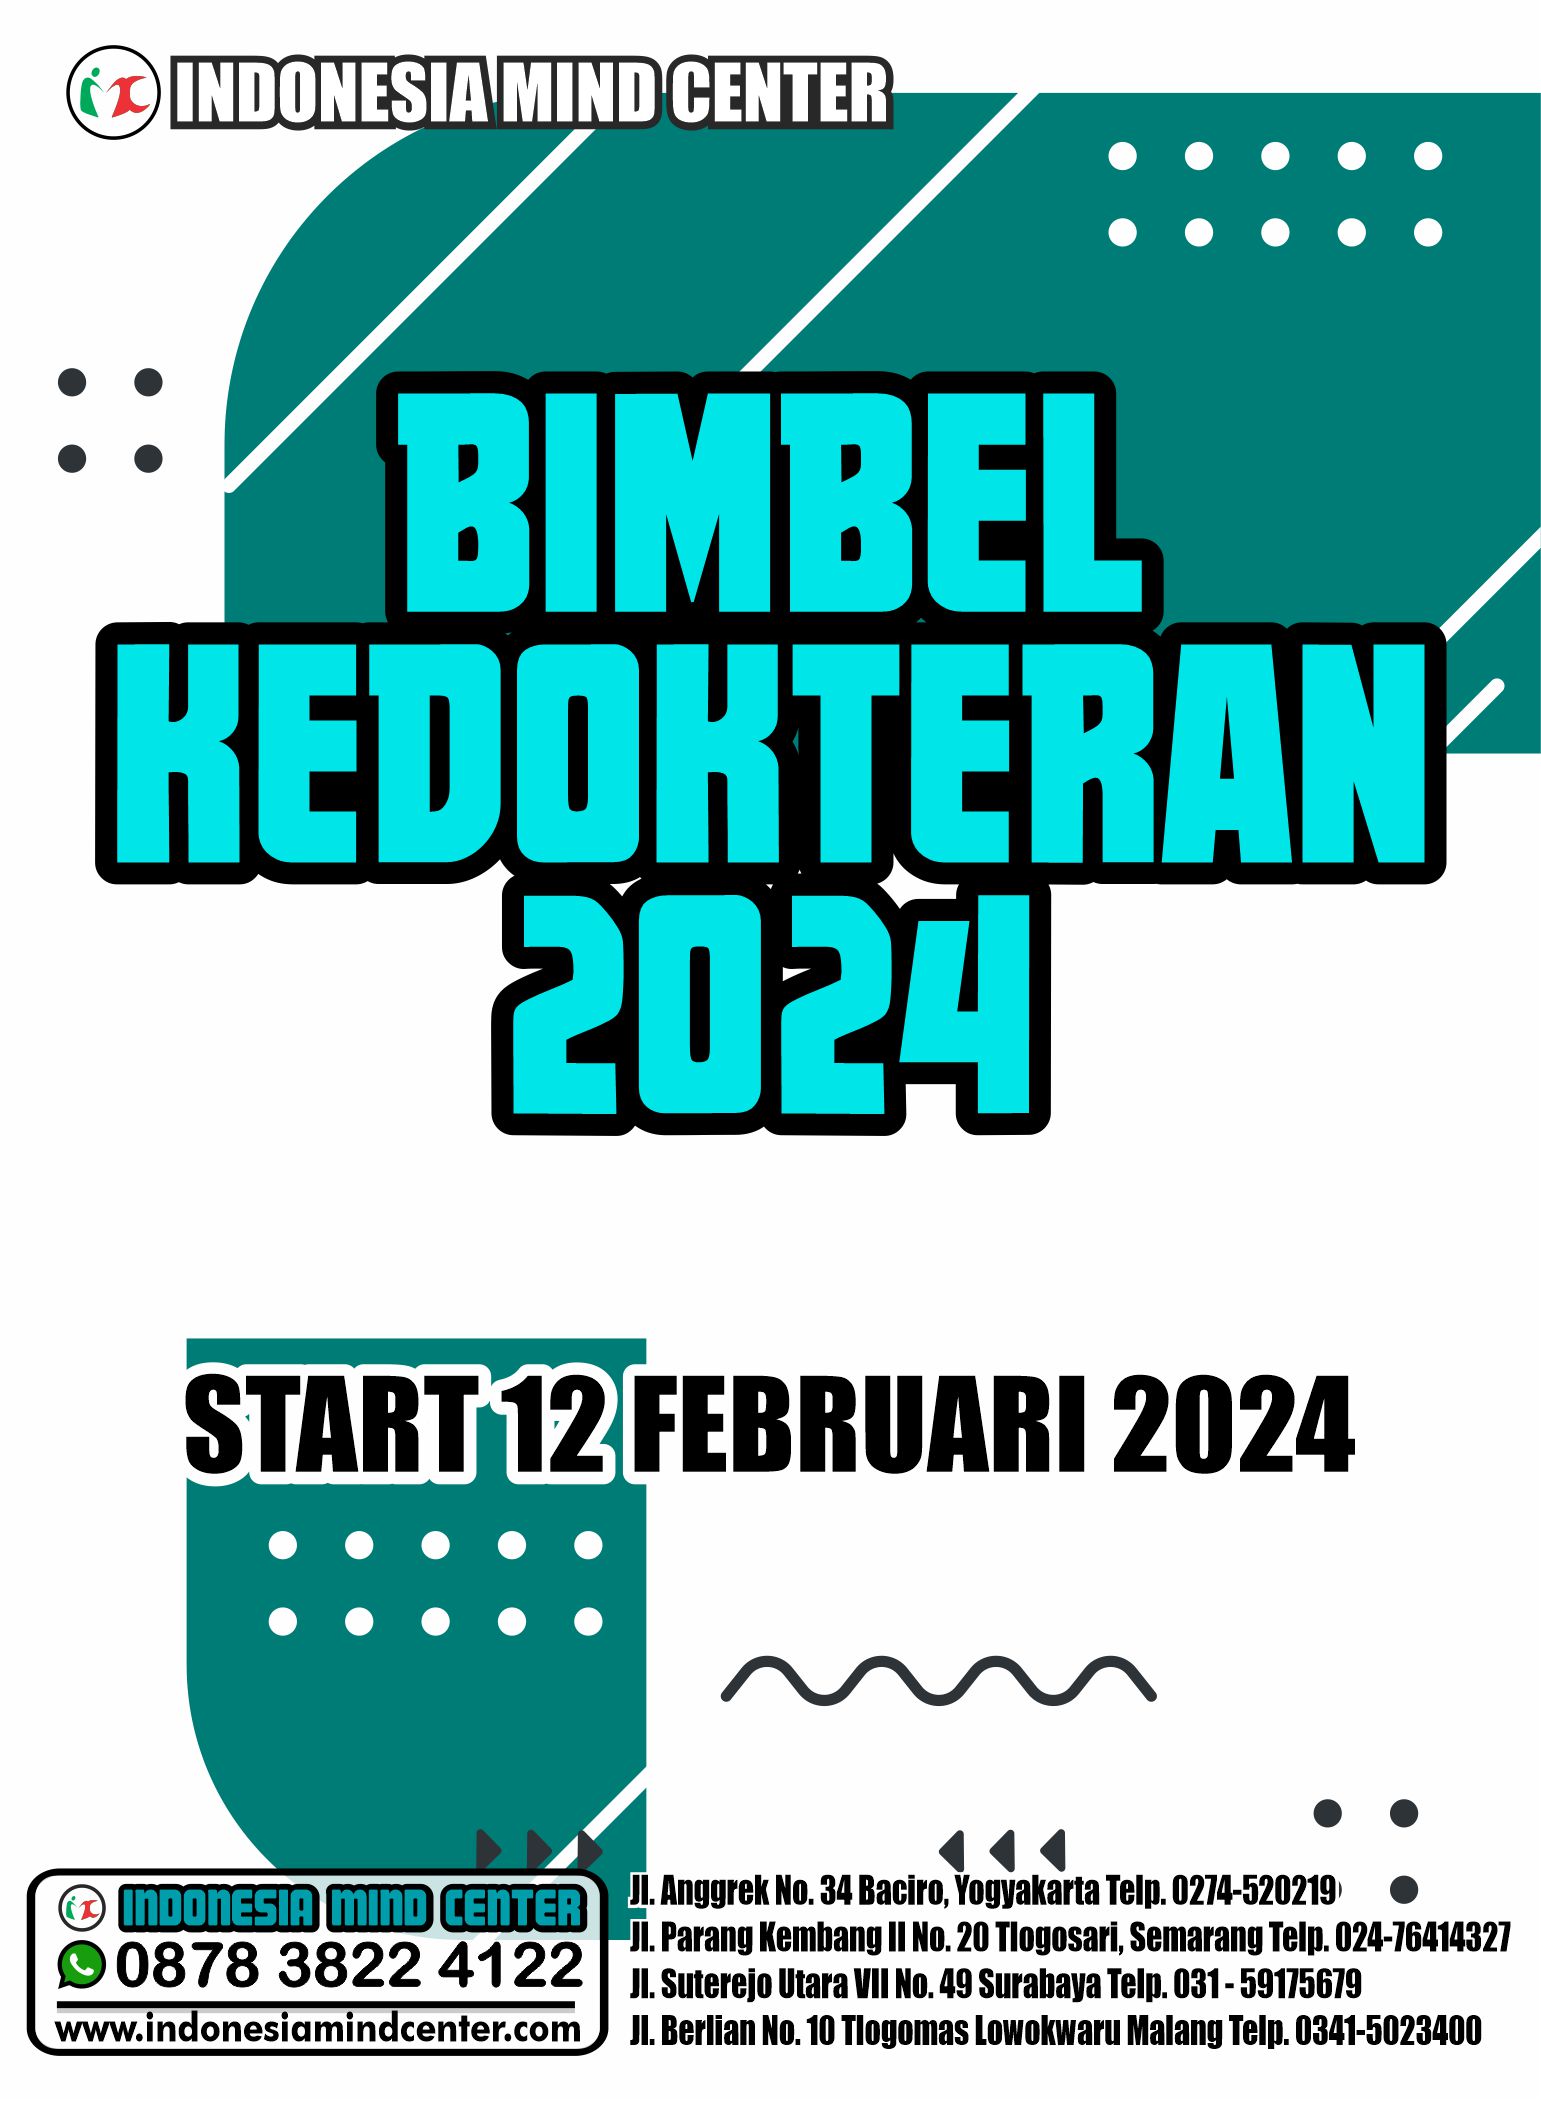 BIMBEL KEDOKTERAN 2024 START 12 FEBRUARI 2024